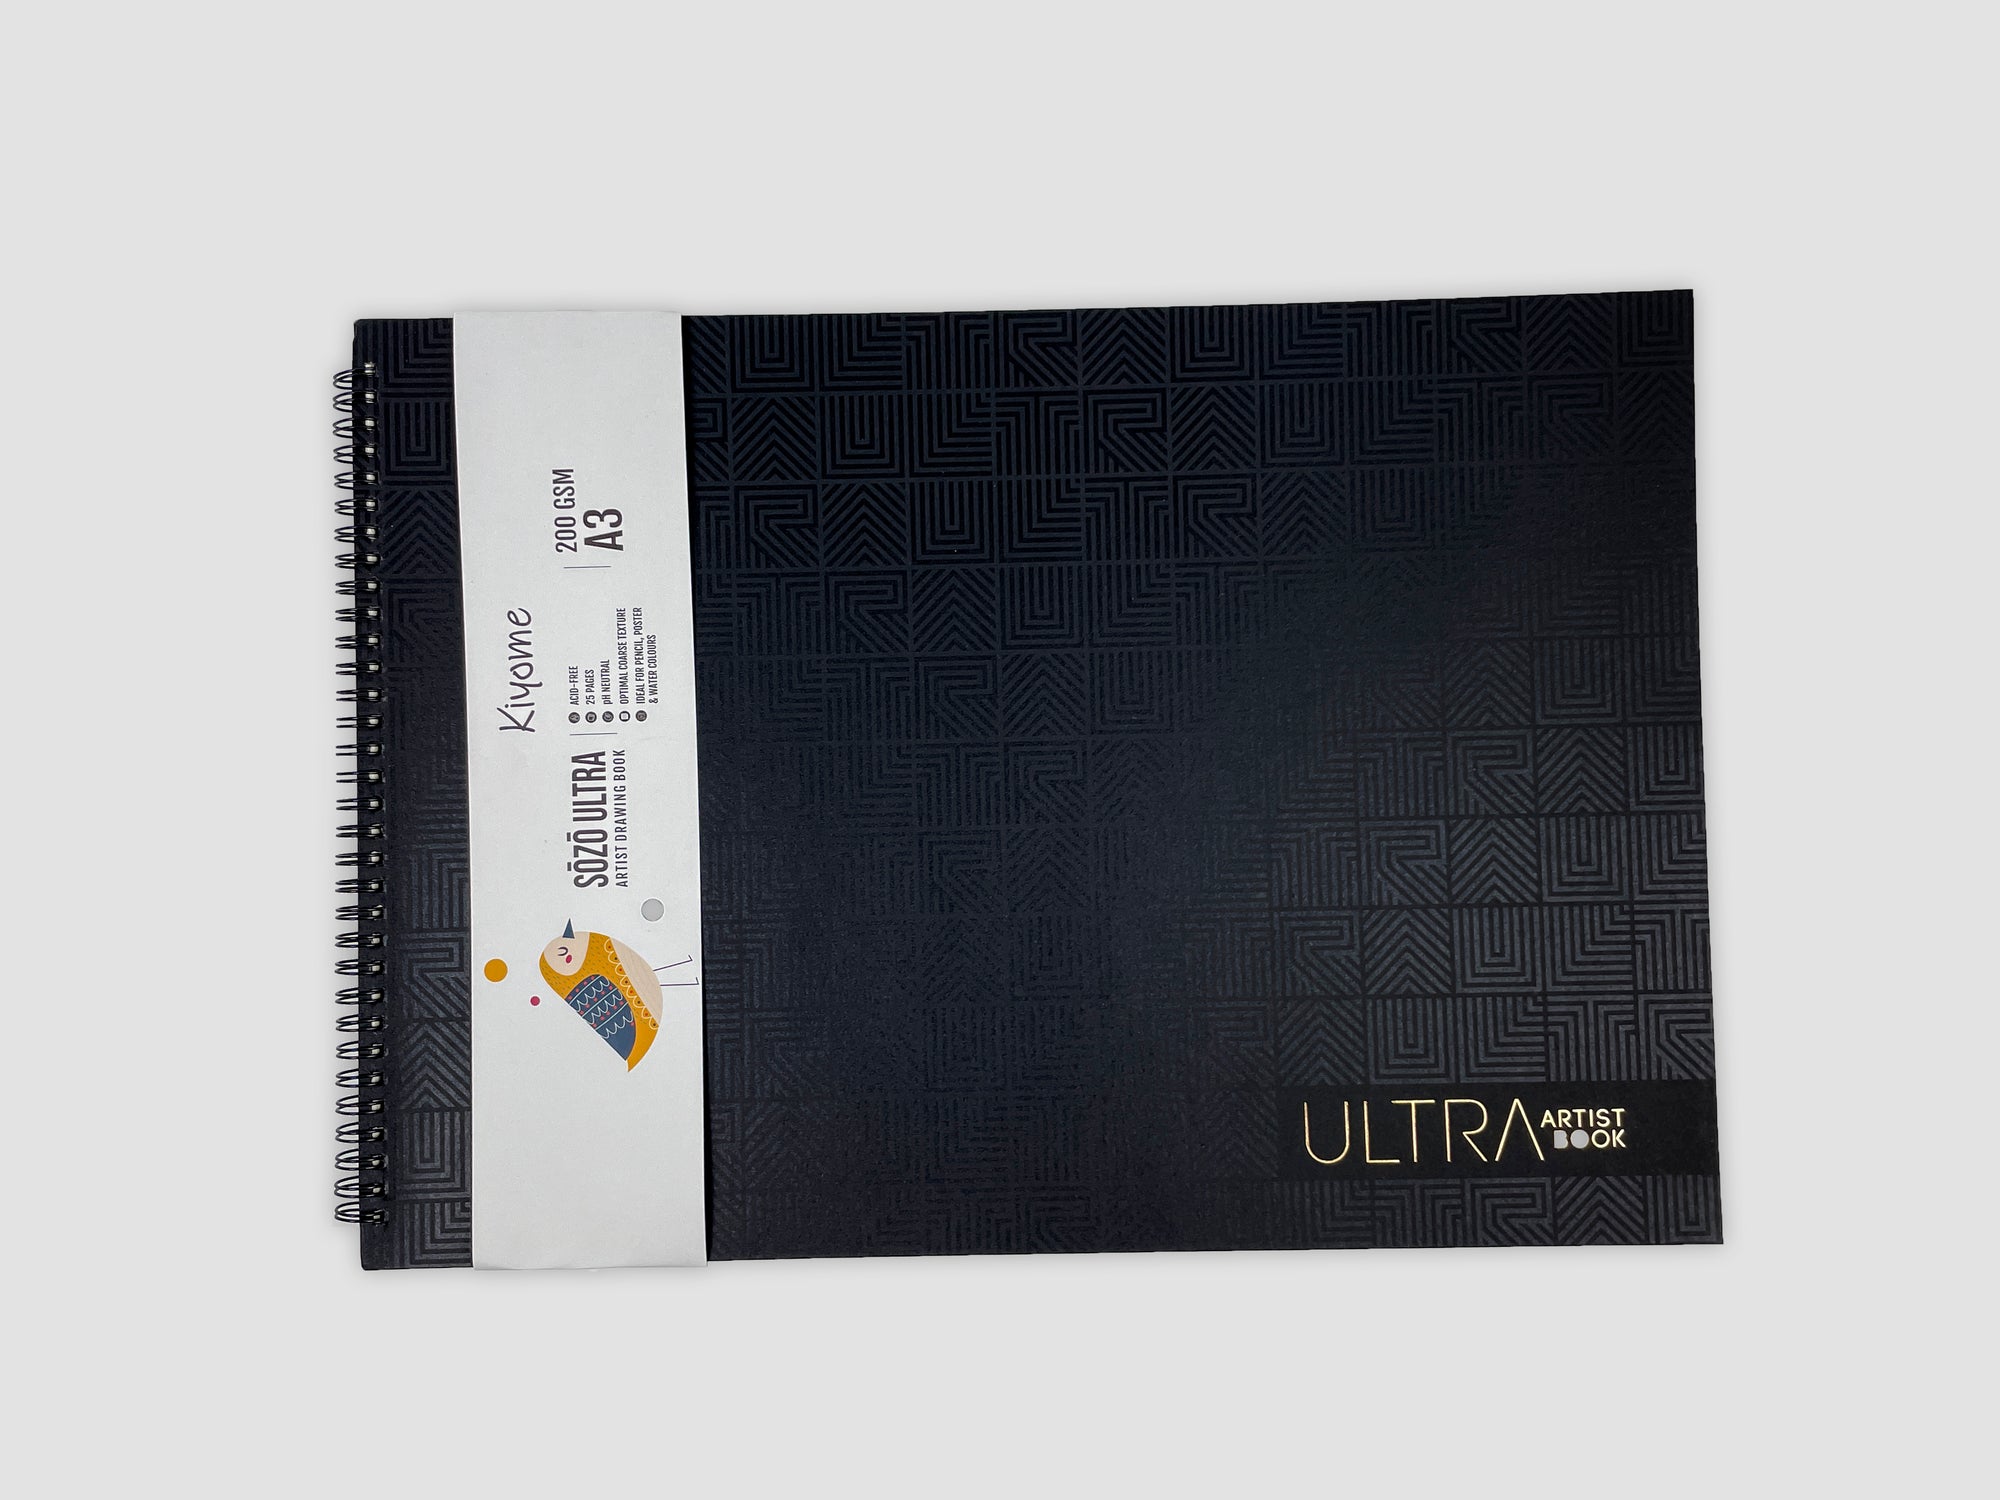 Kiyome SOZO Ultra Drawingbook | 200 GSM | A3 | 25 Sheets